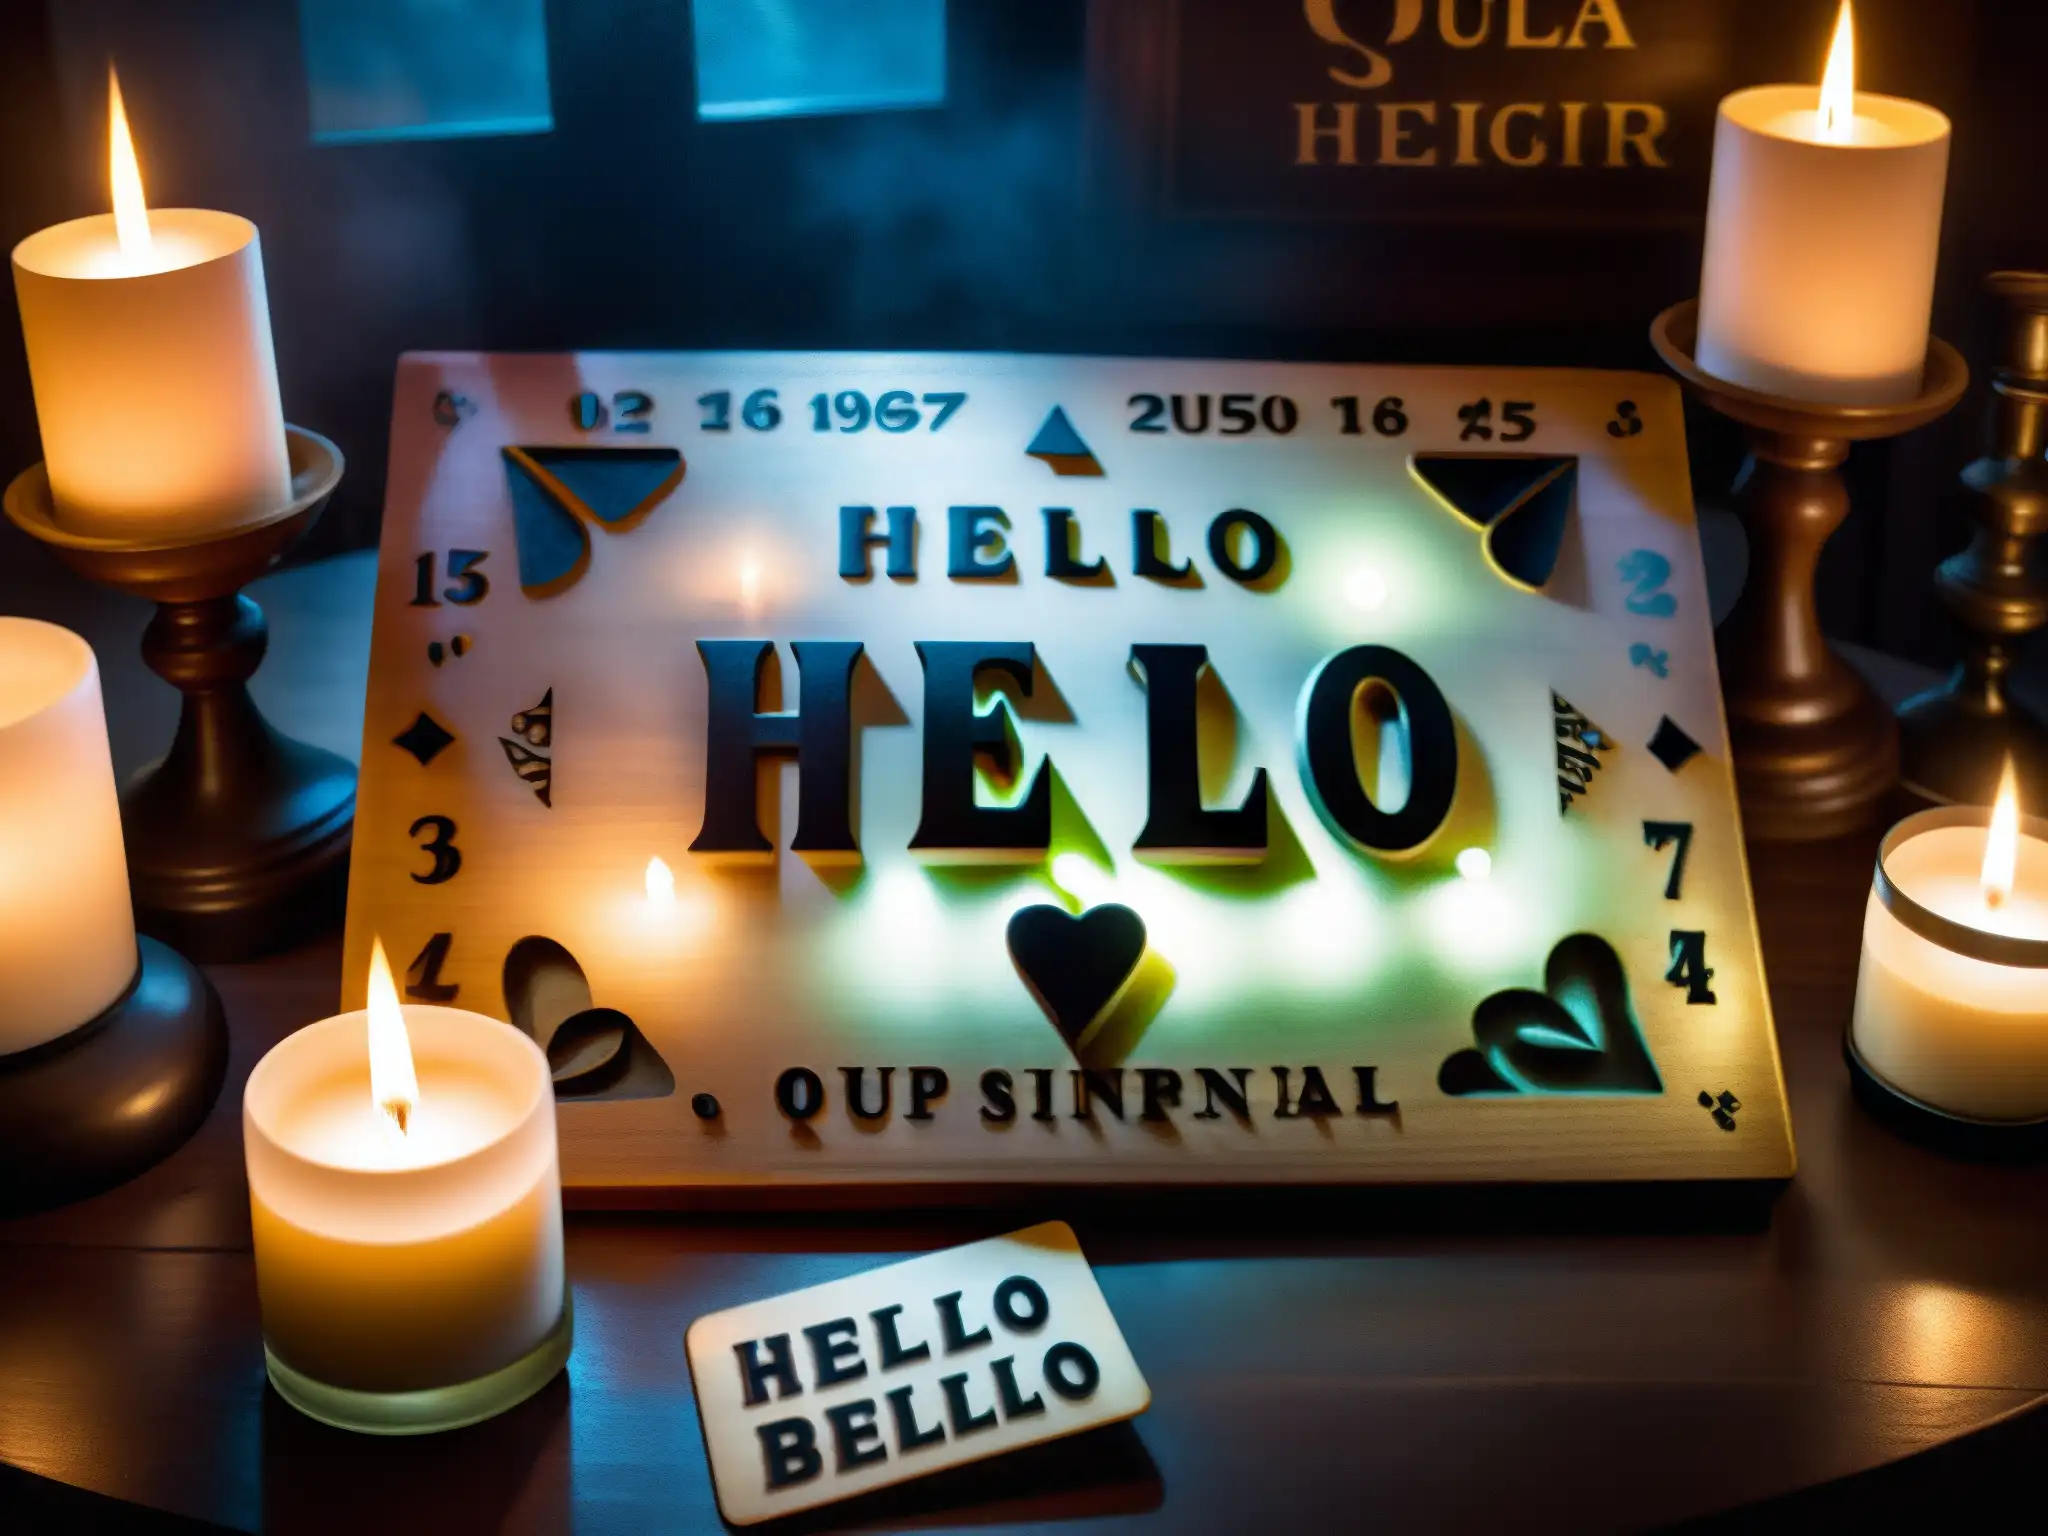 Una escena enigmática con una tabla Ouija vintage en una habitación tenue, rodeada de velas titilantes y una atmósfera misteriosa, evocando la psicología de leyendas urbanas sobrenaturales